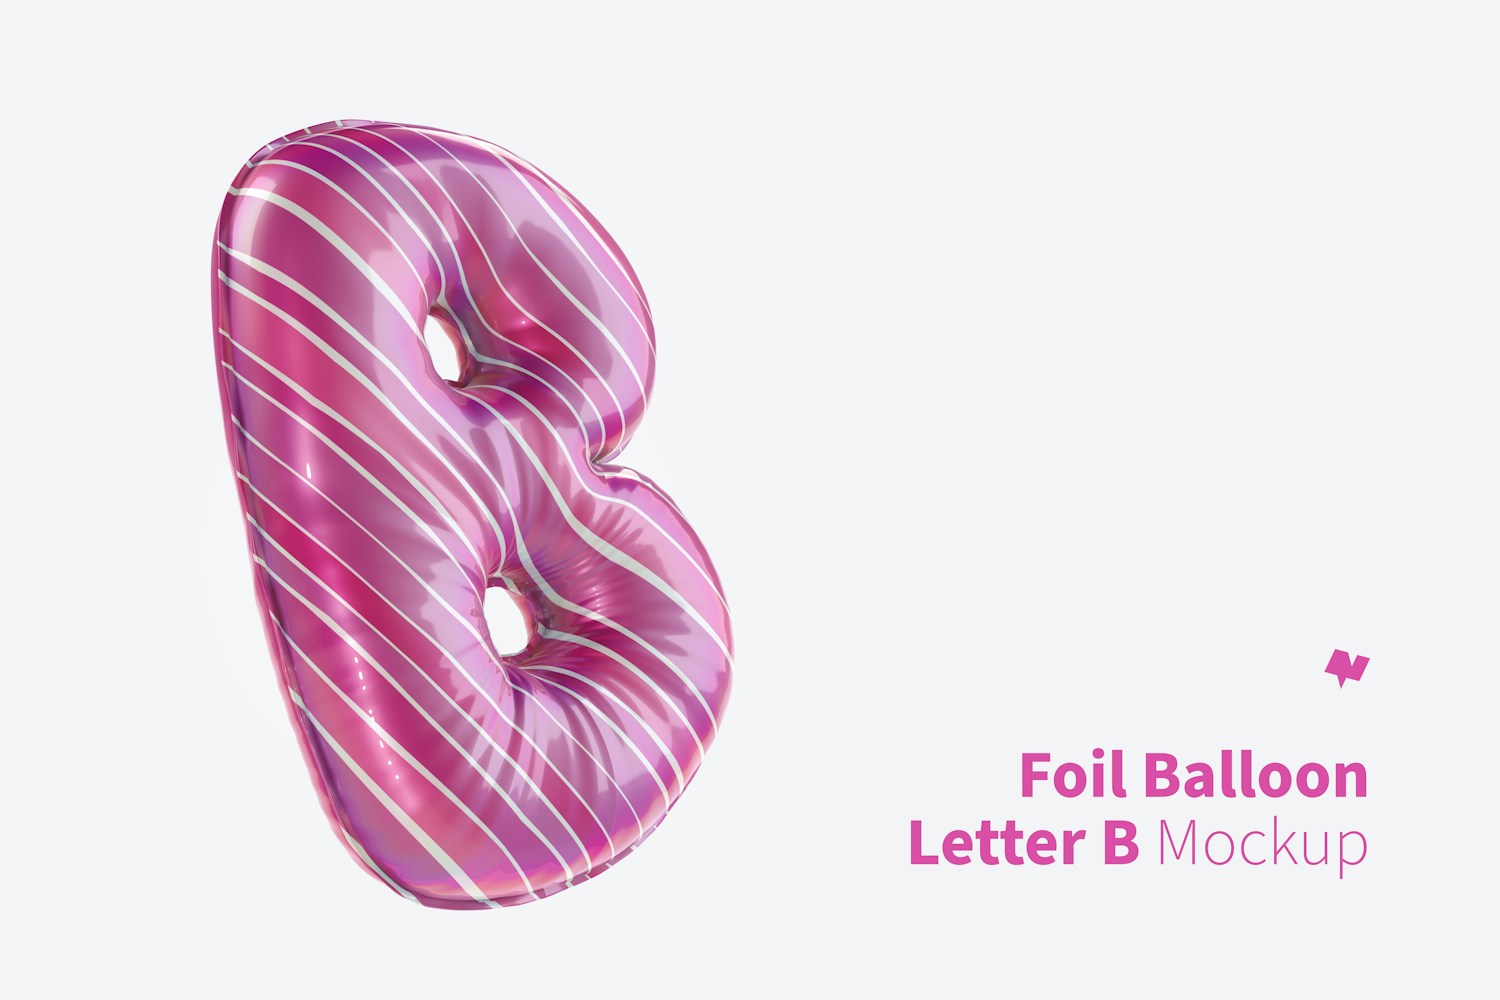 Letter B Foil Balloon Mockup